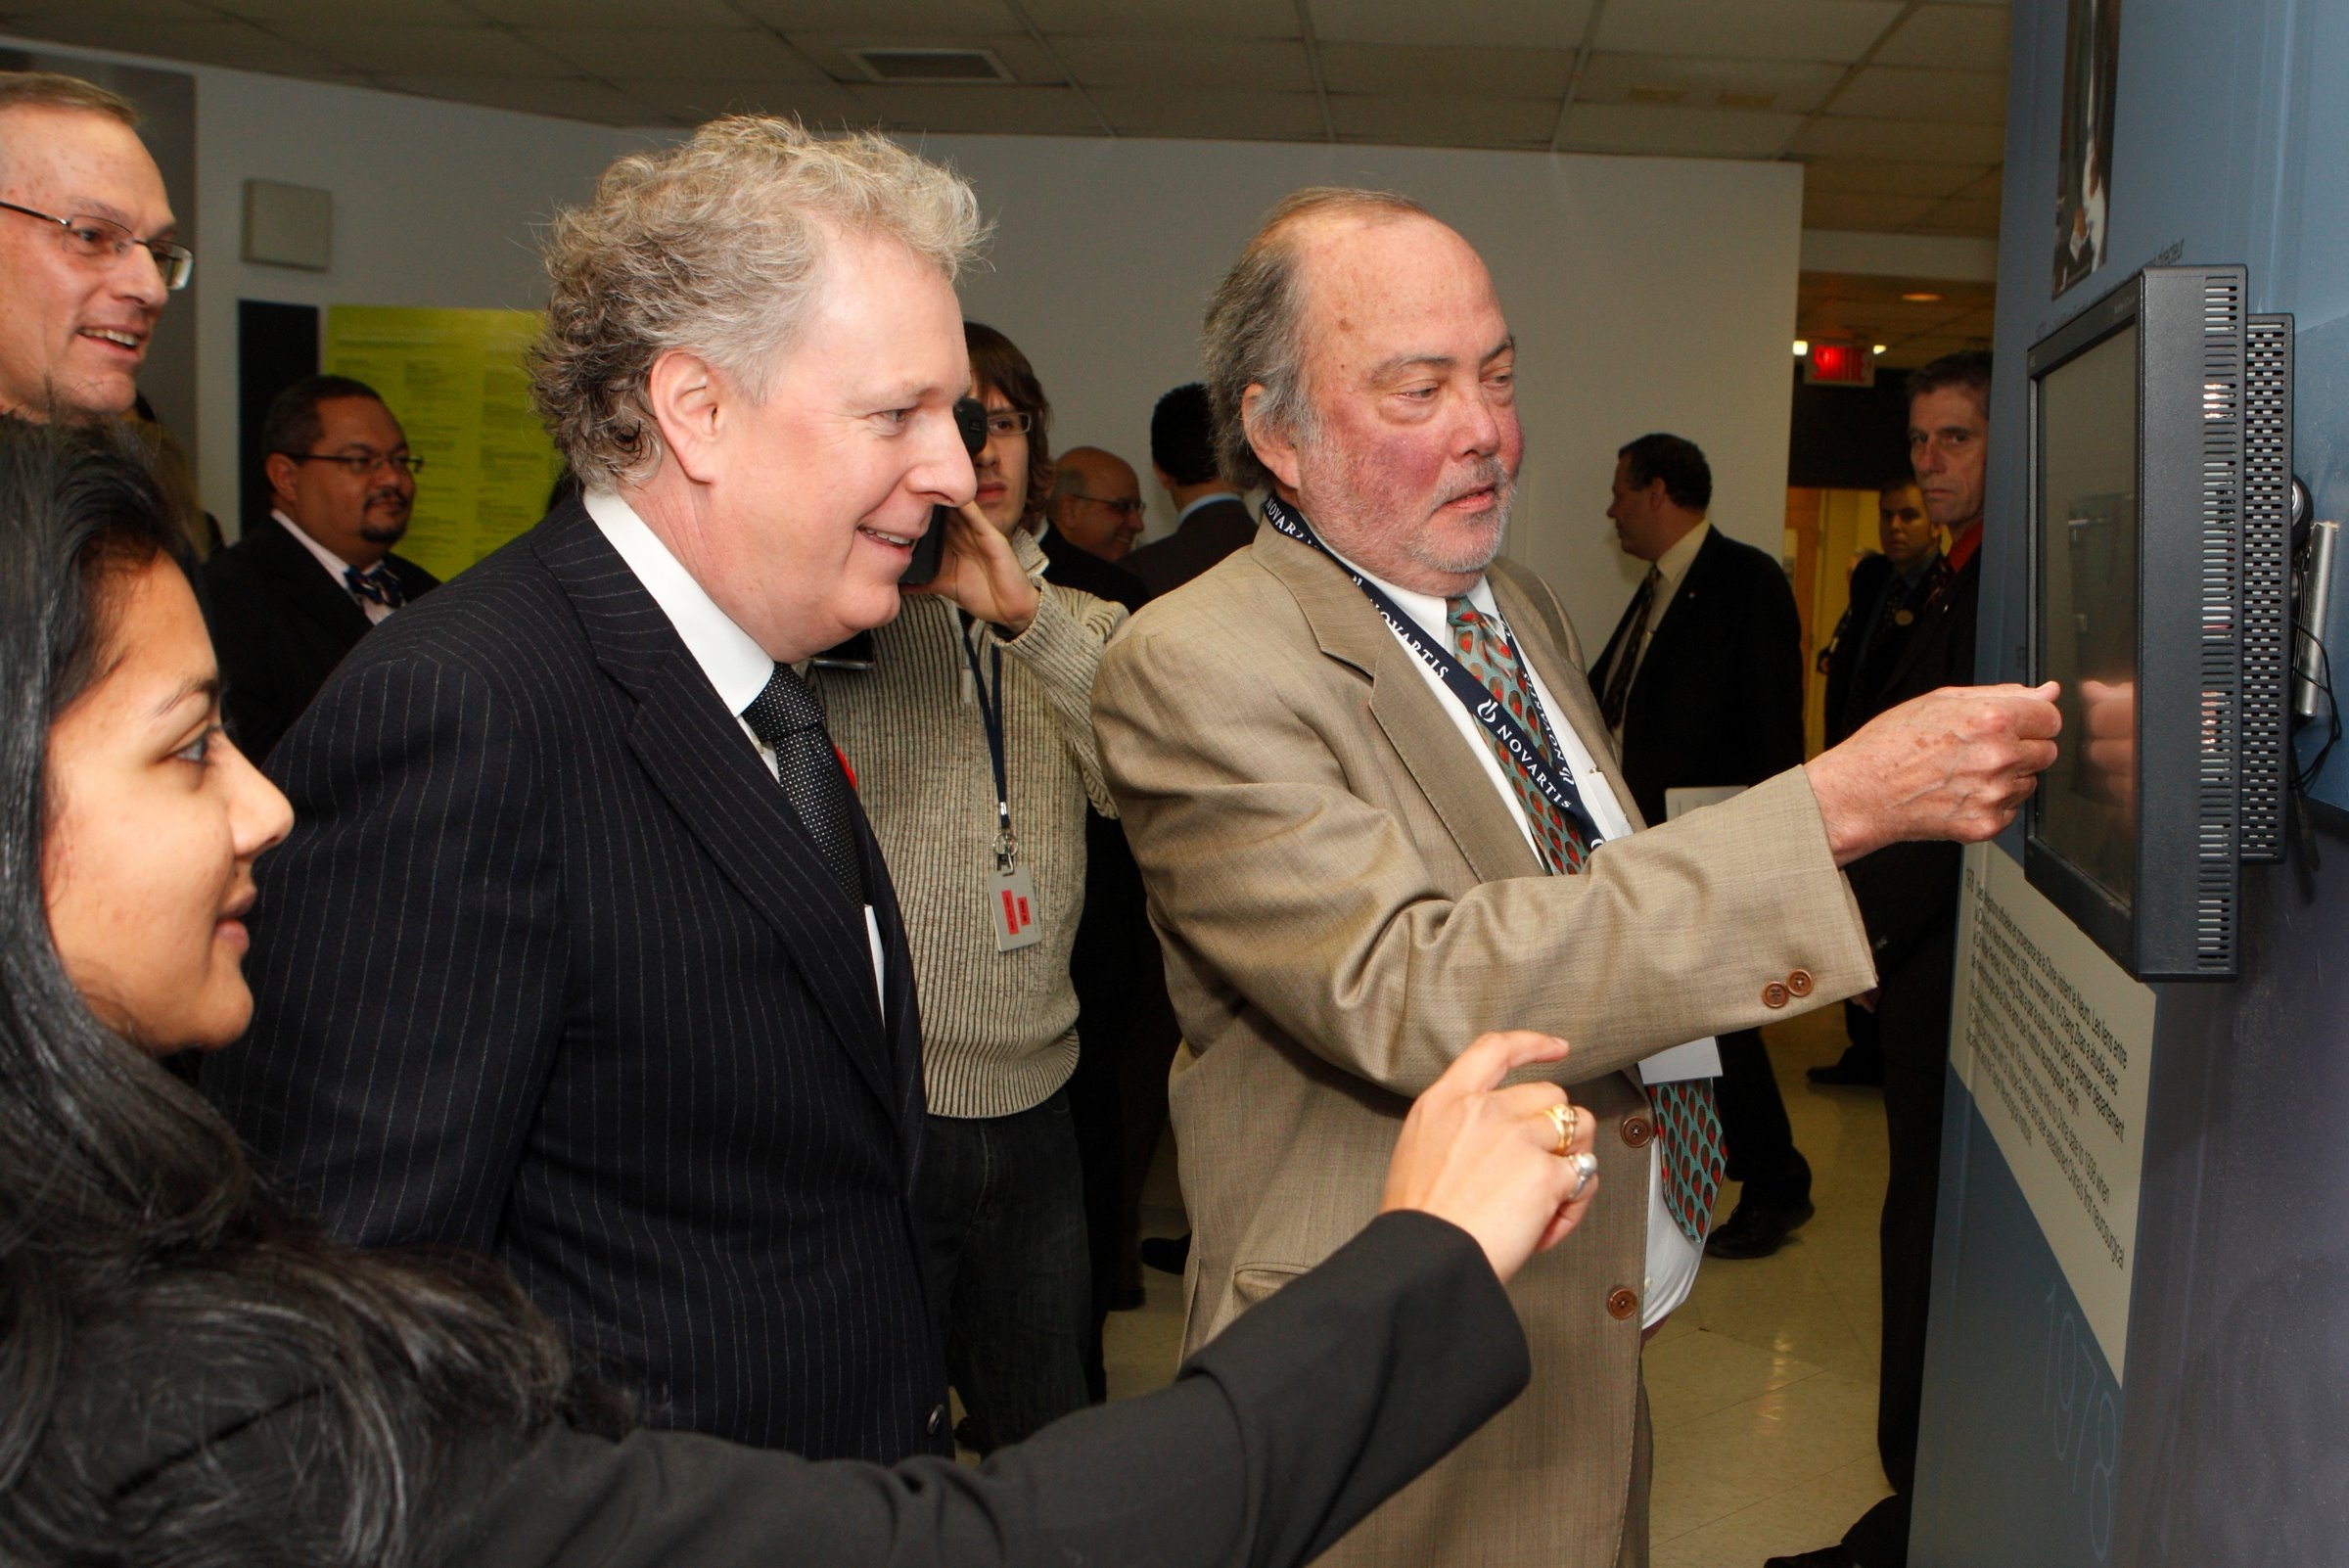 Le première ministre Jean Charest et le Dr David Colman, Directeur, L’Institut et Hôpital neurologiques de Montréal regardant une exposition interactive durant les célébrations du 75e anniversaire de L’Institut et Hôpital neurologiques de Montréal.